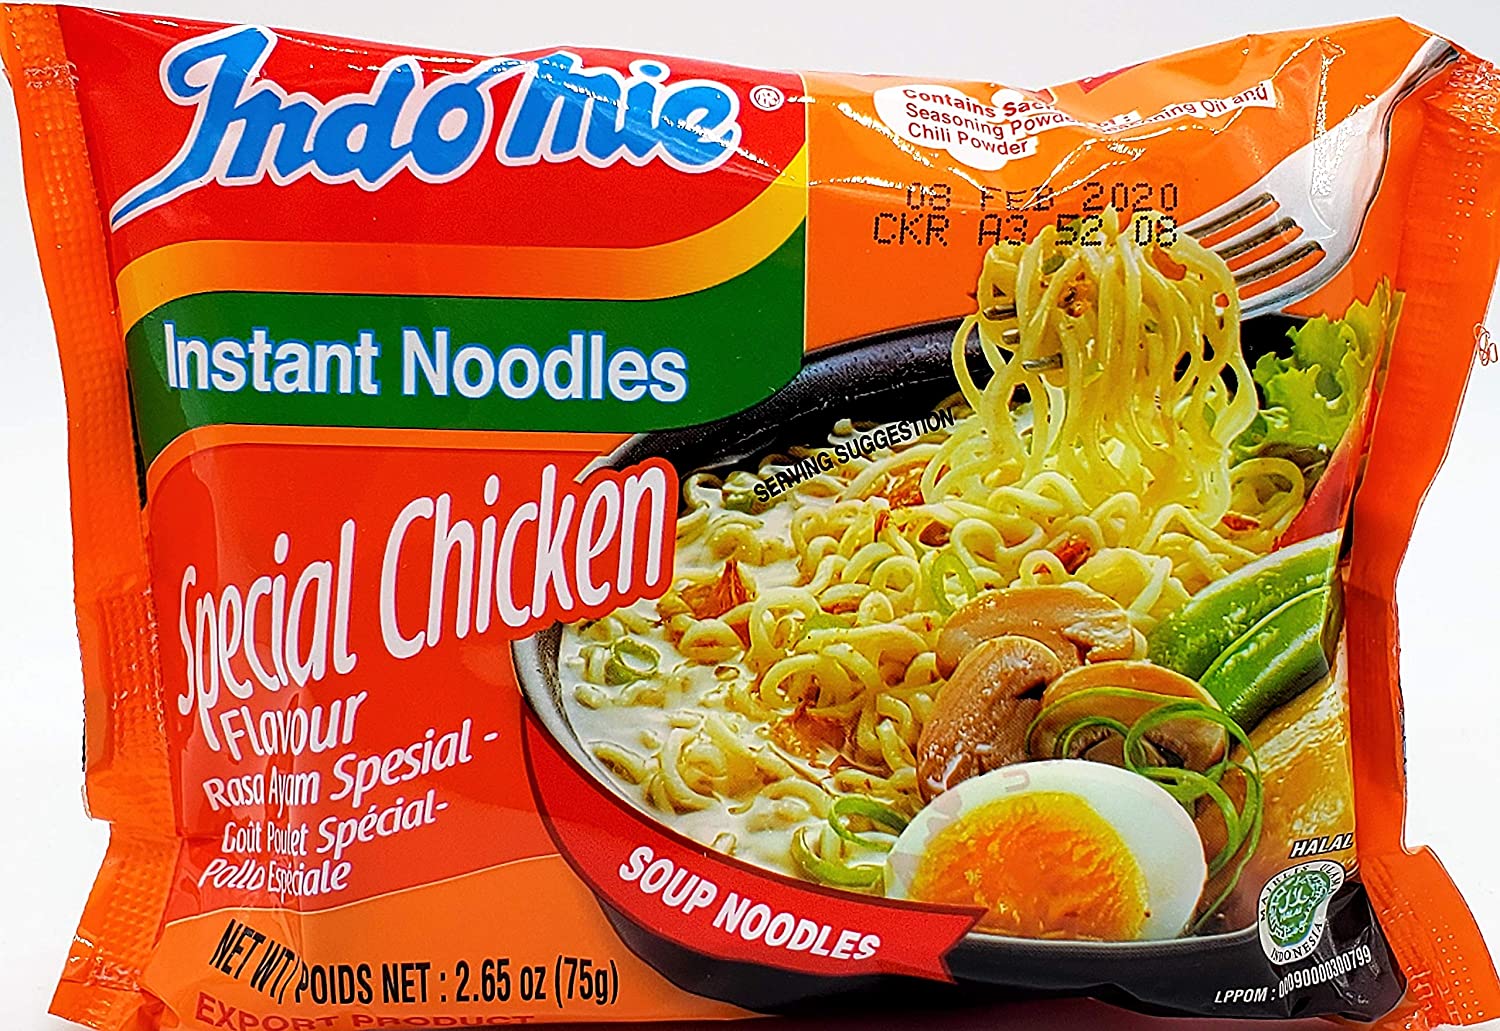 Indomie Special Chicken flavour not registered for sale in Nigeria —NAFDAC